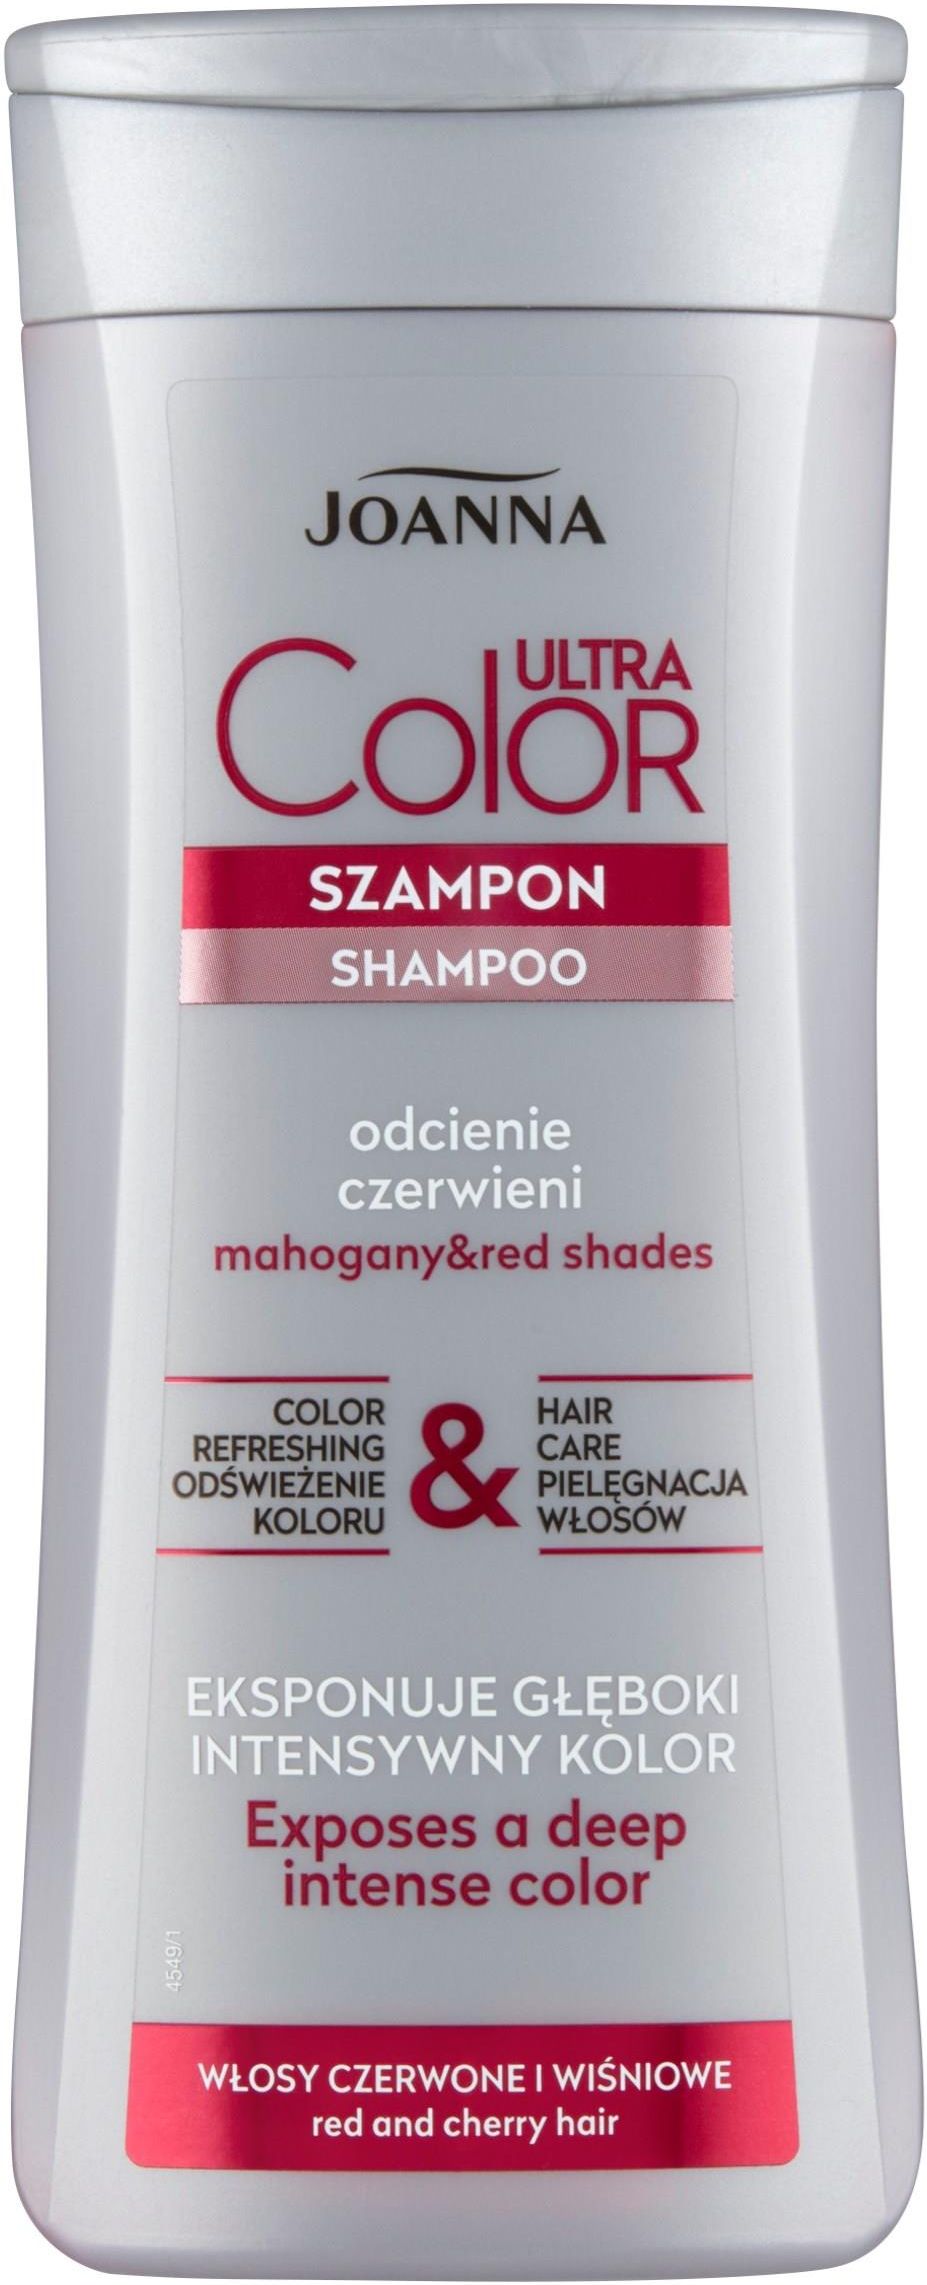 szampon joanna do włosów czarwony